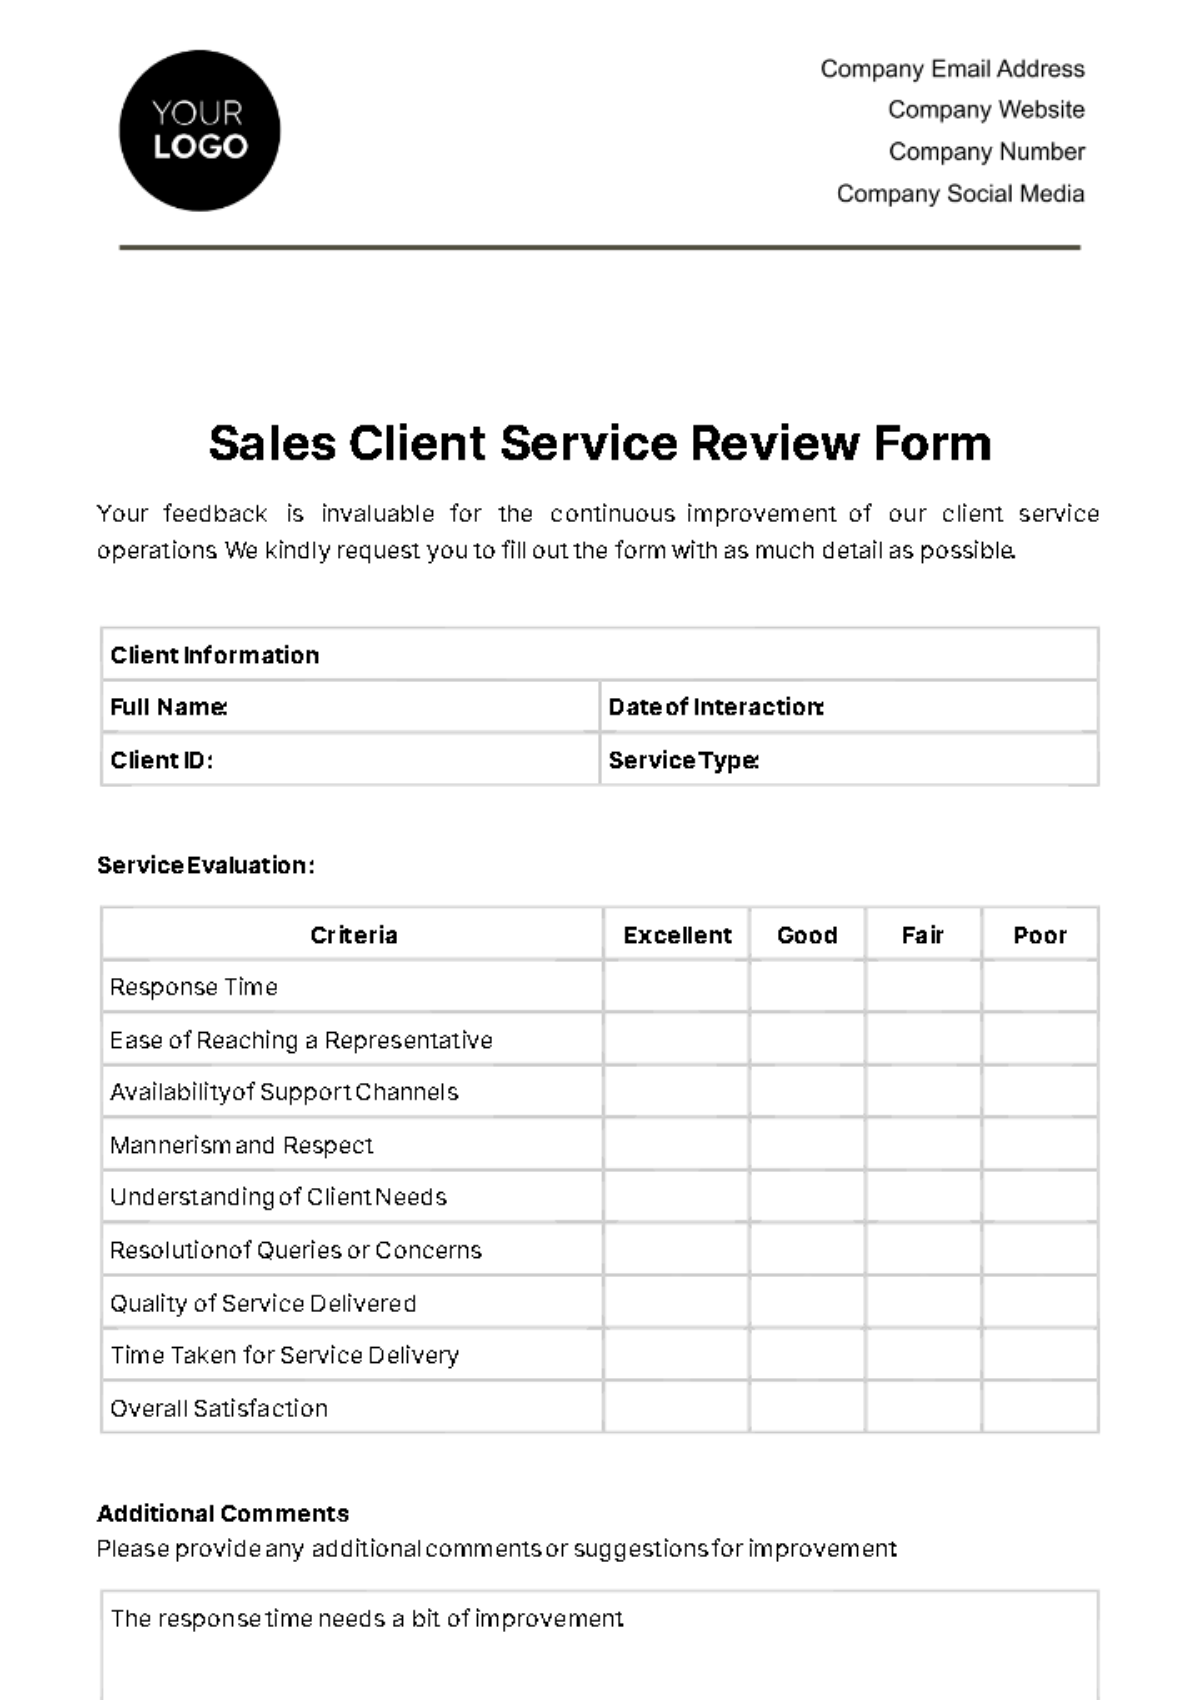 Sales Client Service Review Form Template